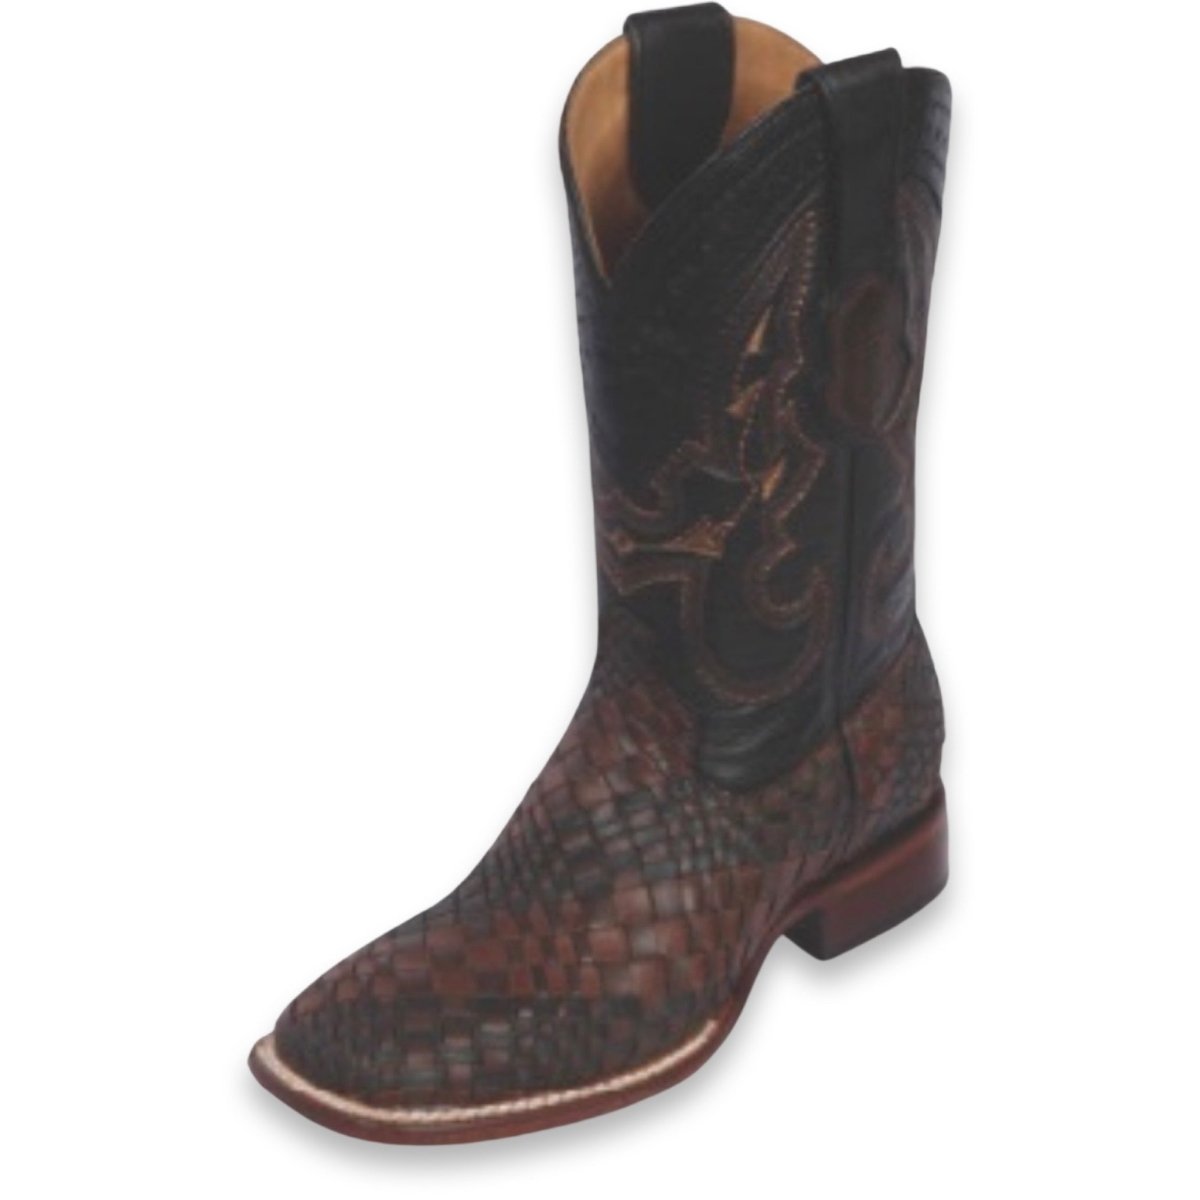 Men's Hand Embroidered Rodeo Boot - CharroAzteca.com